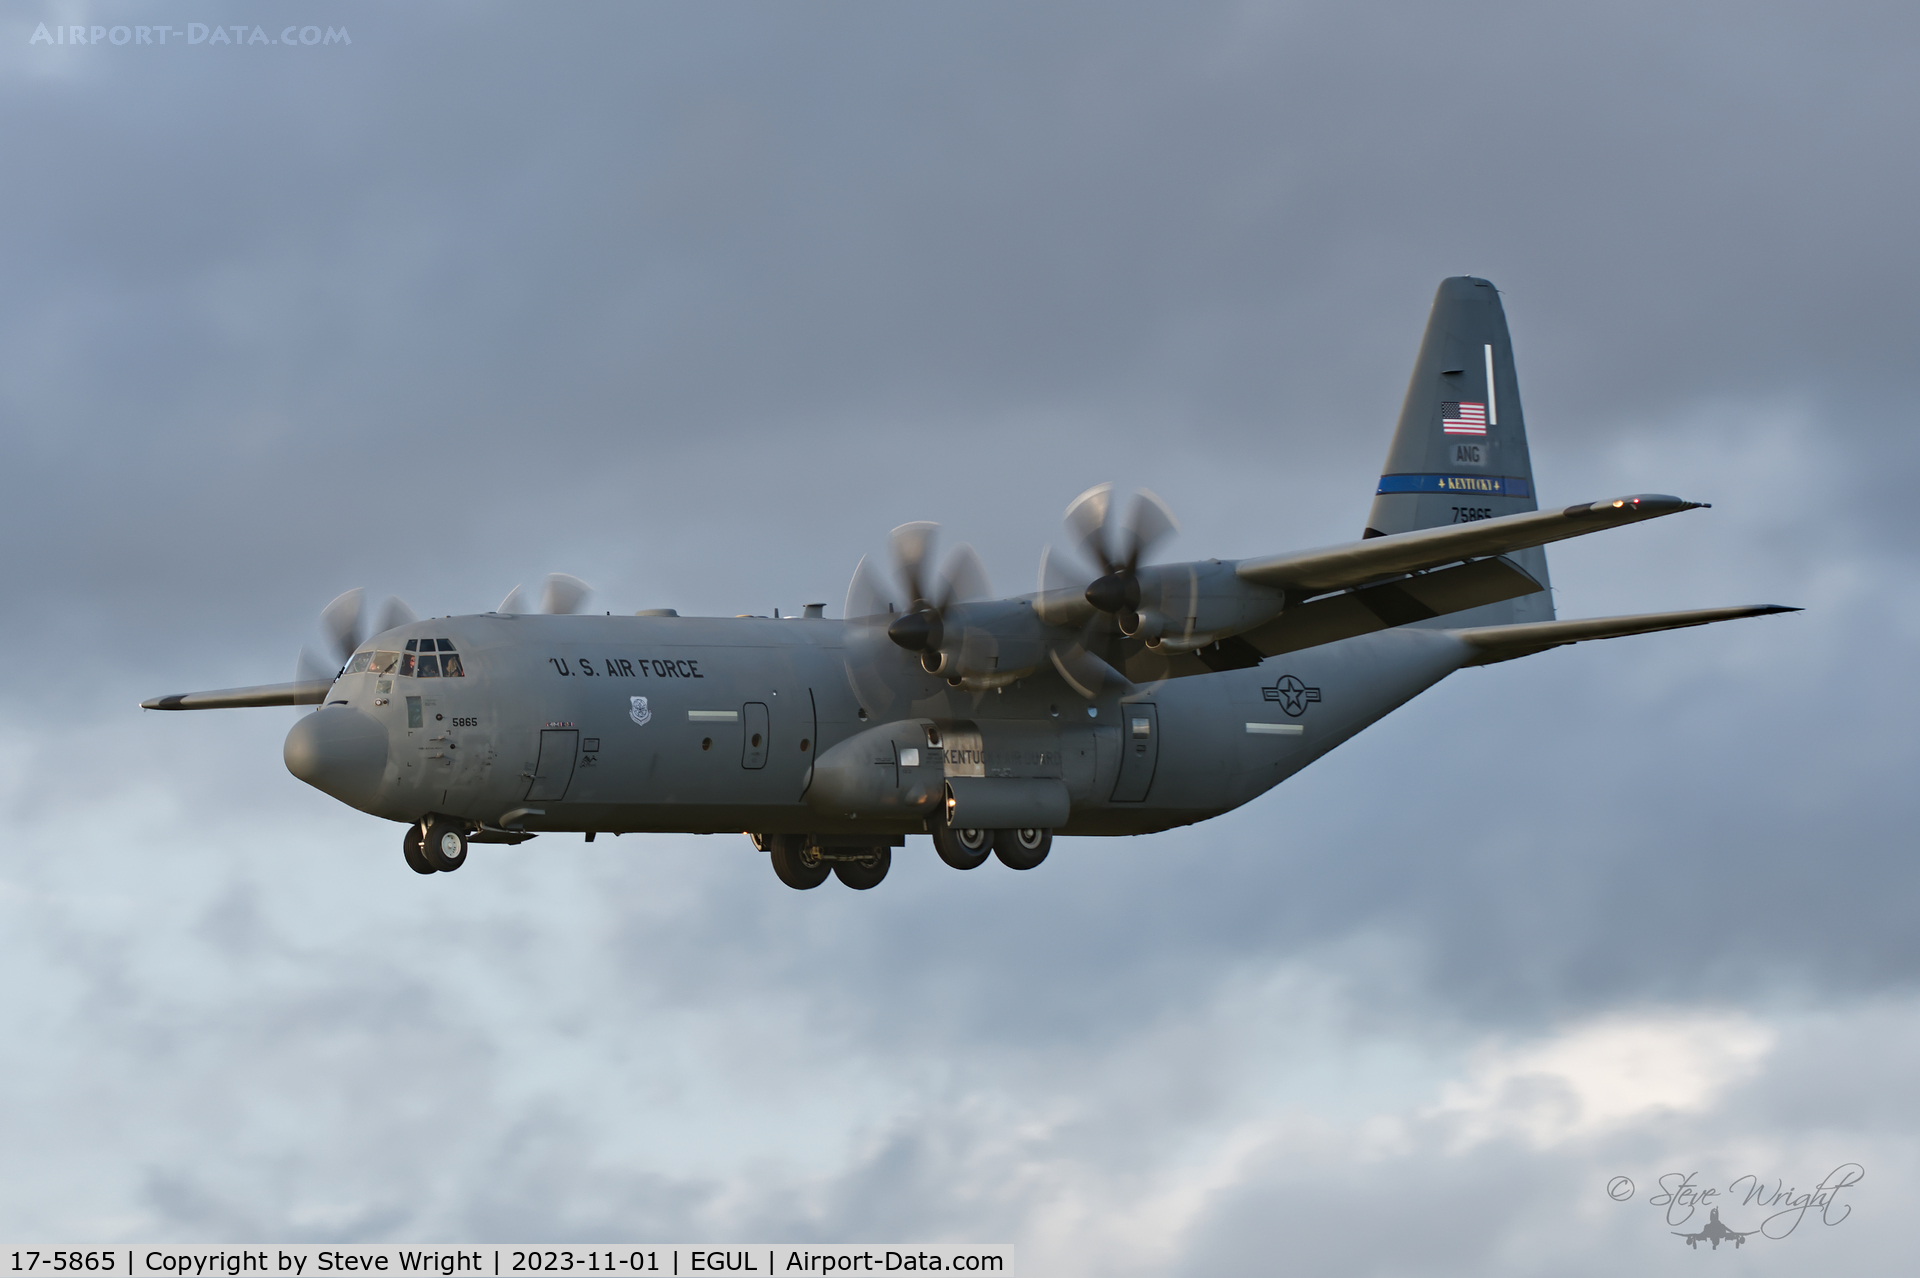 17-5865, 2018 Lockheed Martin C-130J-30 C/N 382-5865, RAF Lakenheath UK